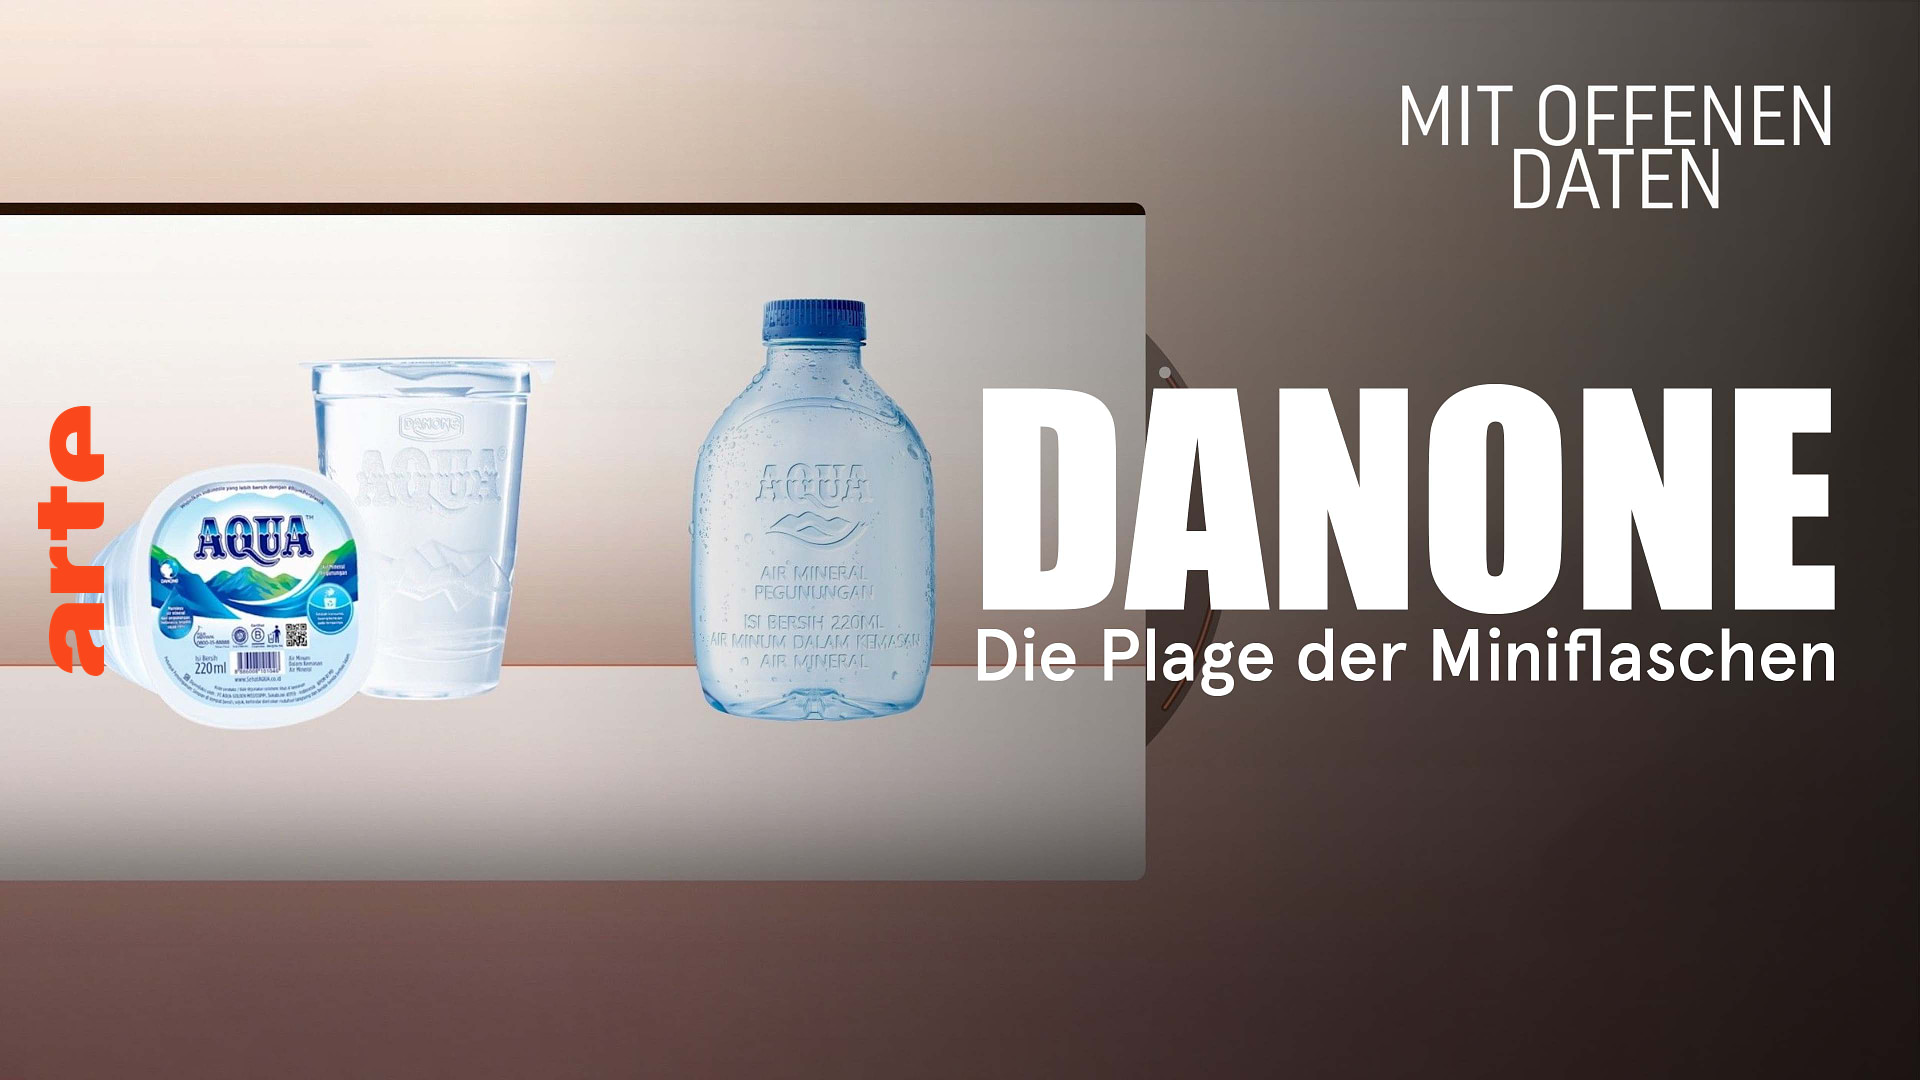 Danone: Die Plage der Miniflaschen